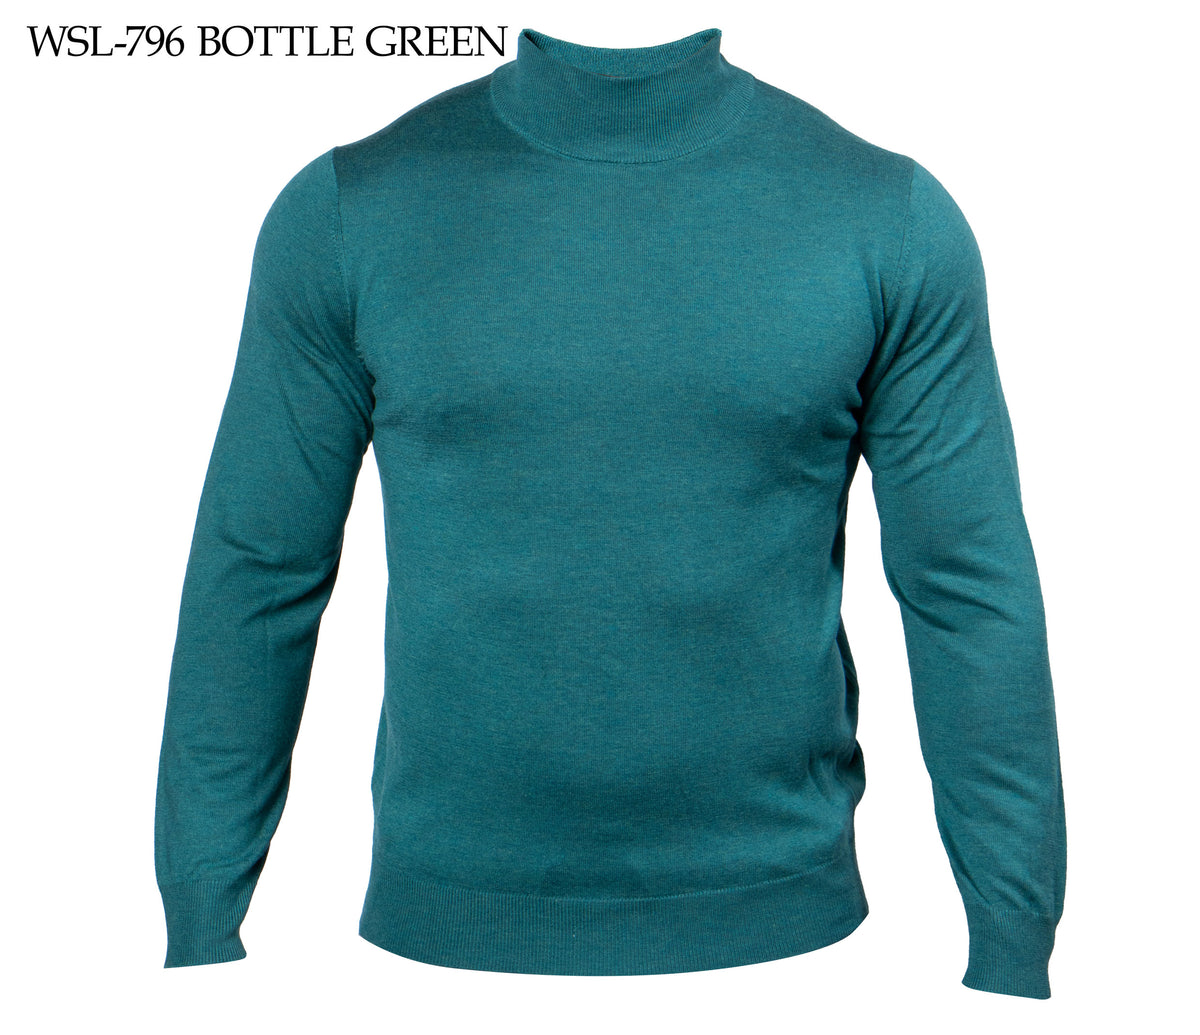 Prestige Bottle Green Mock Neck Elite Wool Sweater - Dudes Boutique